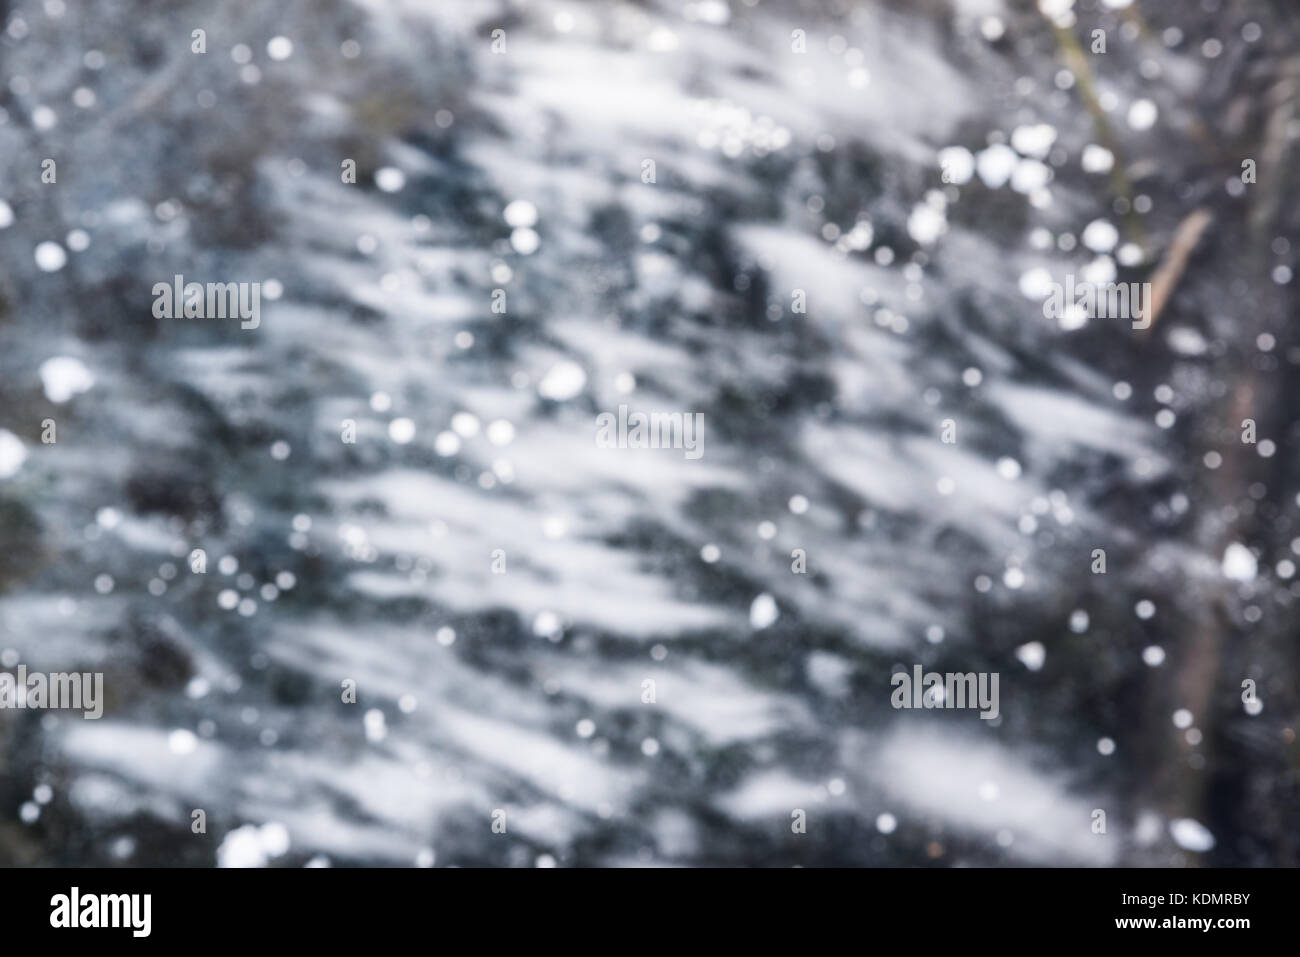 Abstract background d'hiver. l'eau d'un lac gelé. arrière-plan lumineux avec glace floue Banque D'Images